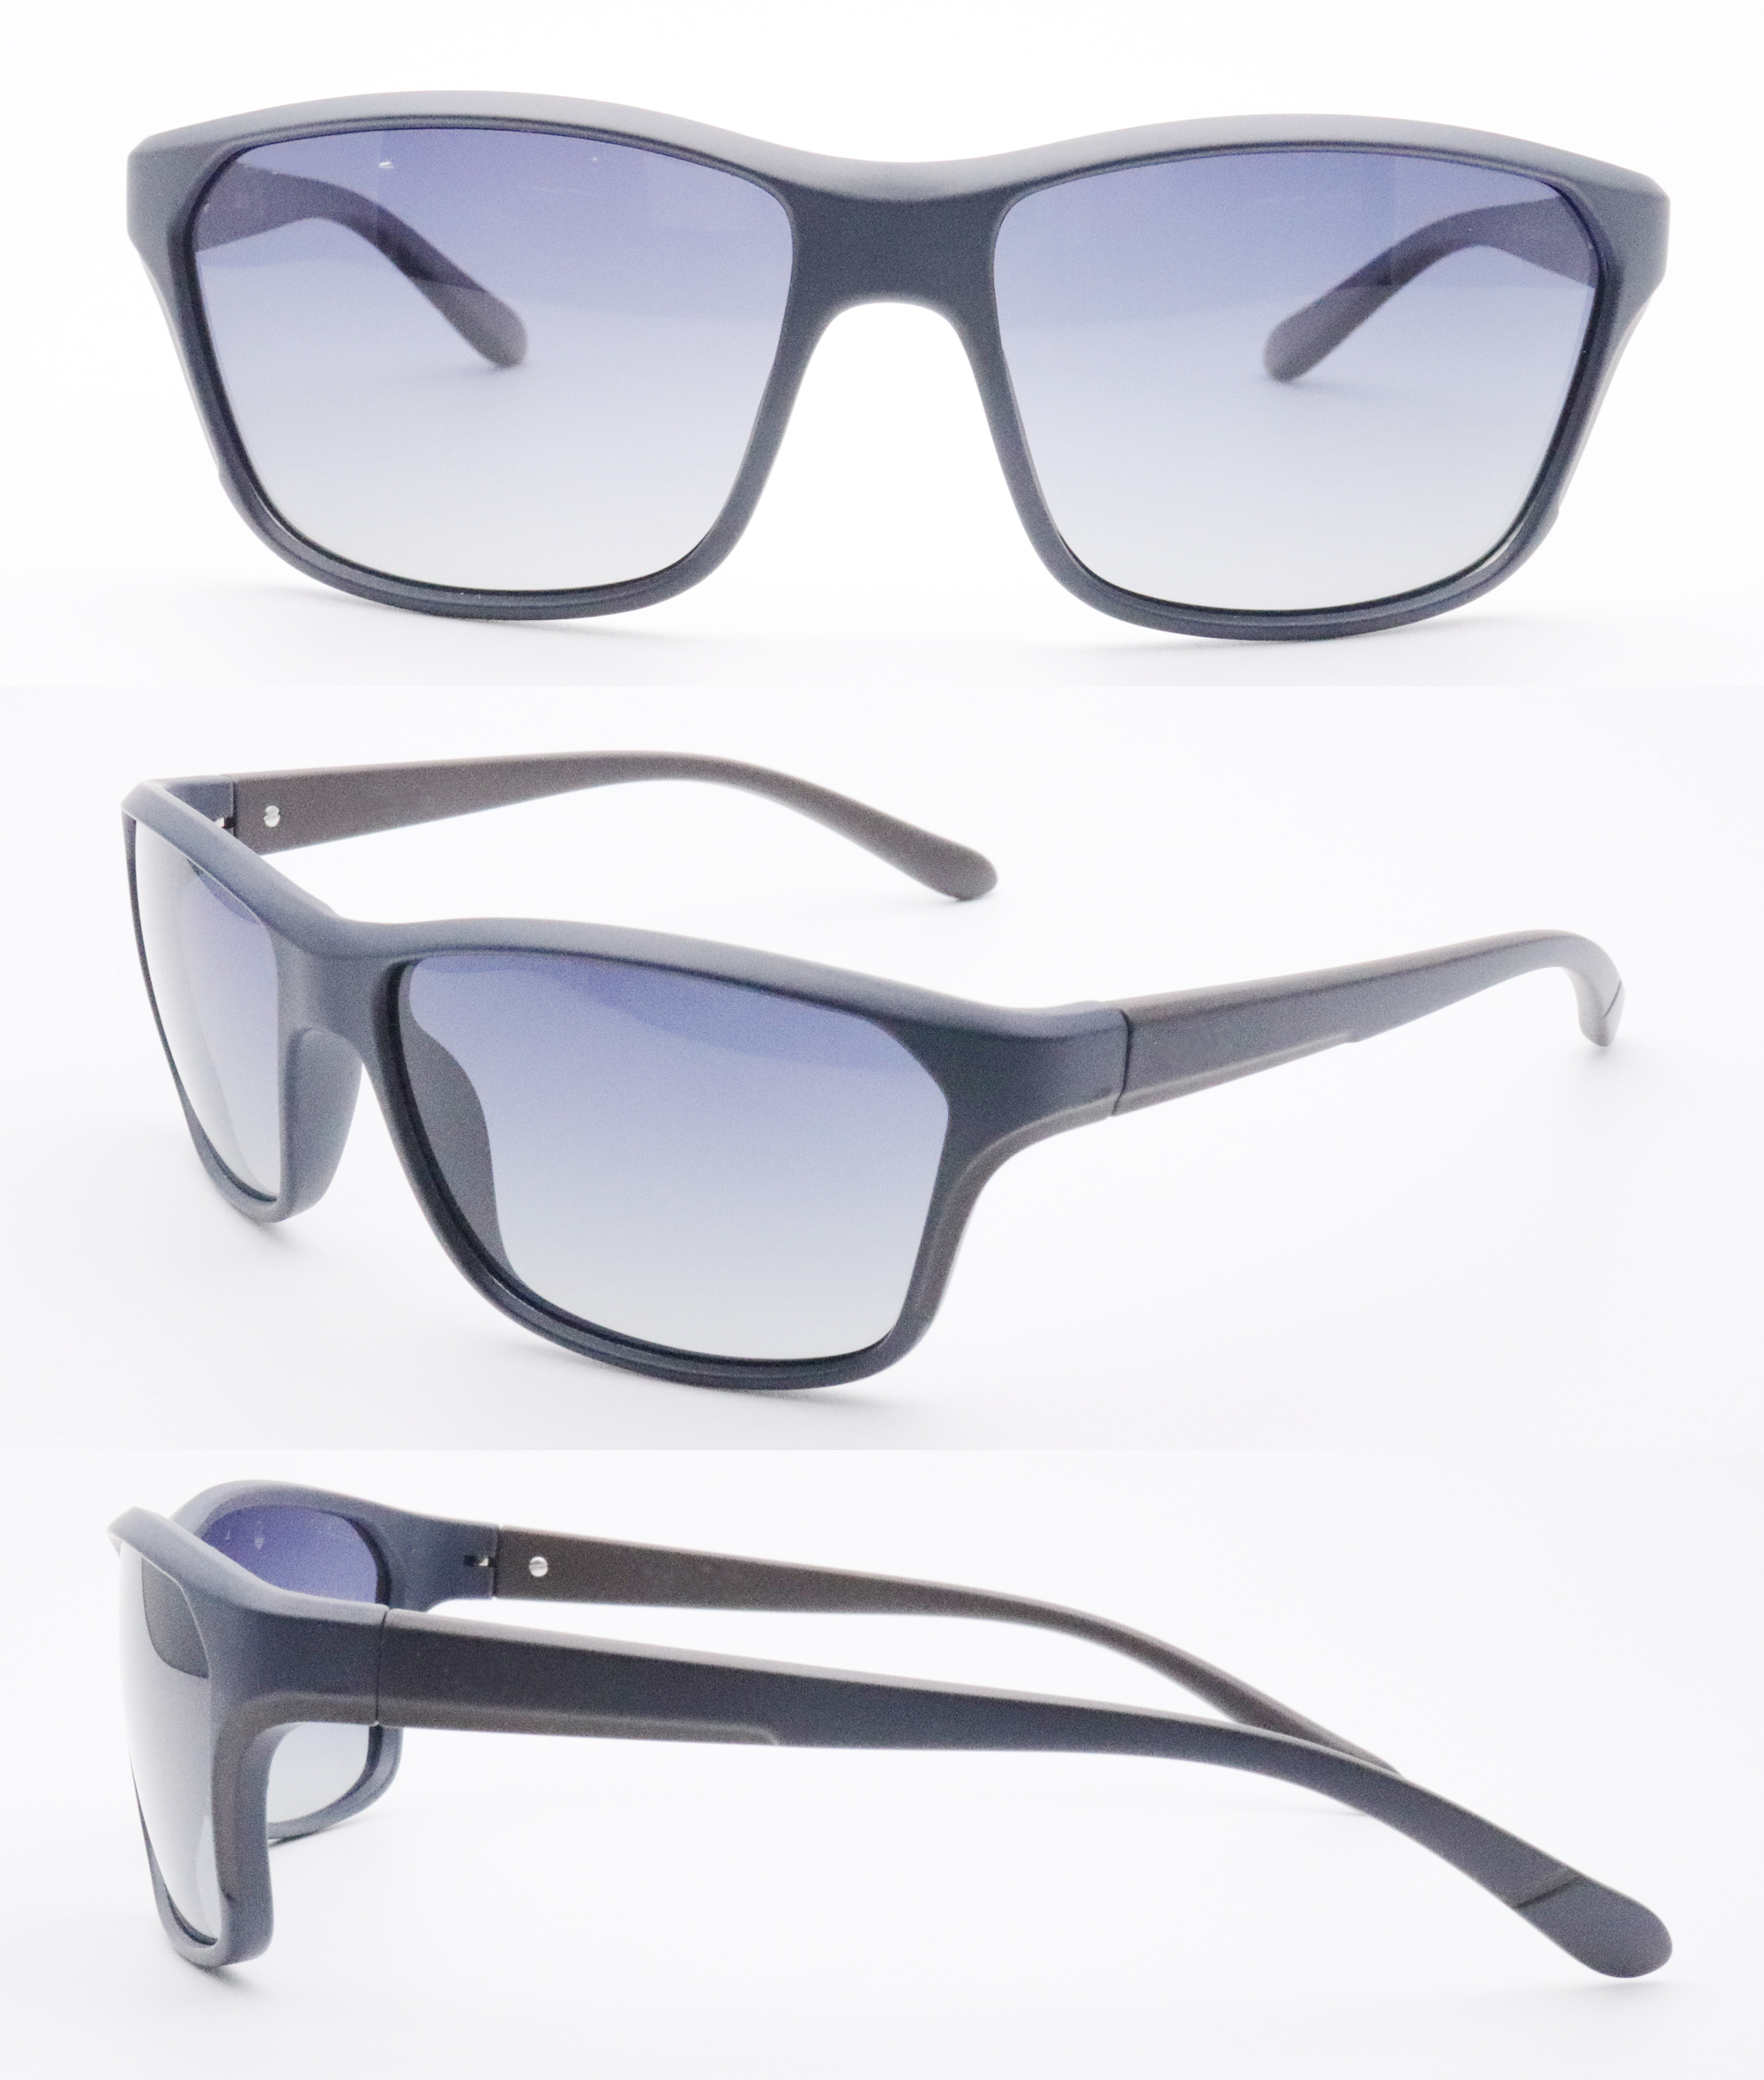 Cateye-Sonnenbrillen für Damen online